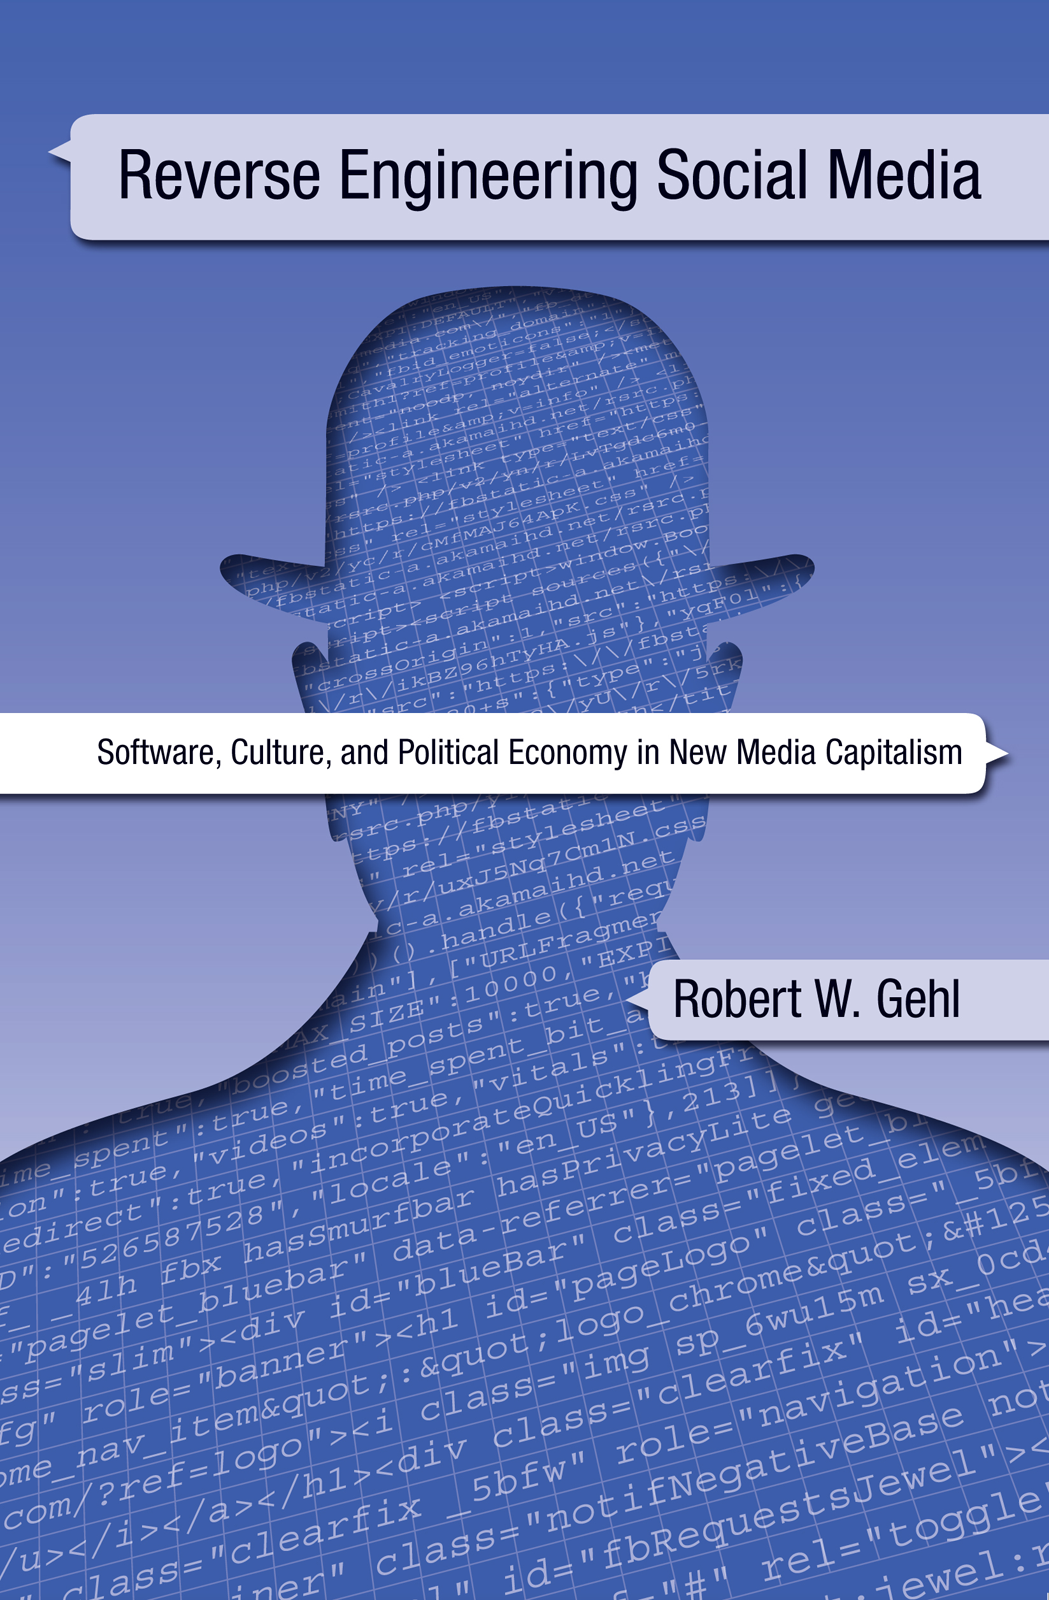 Reverse Engineering Social Media, by Robert W. Gehl, book cover